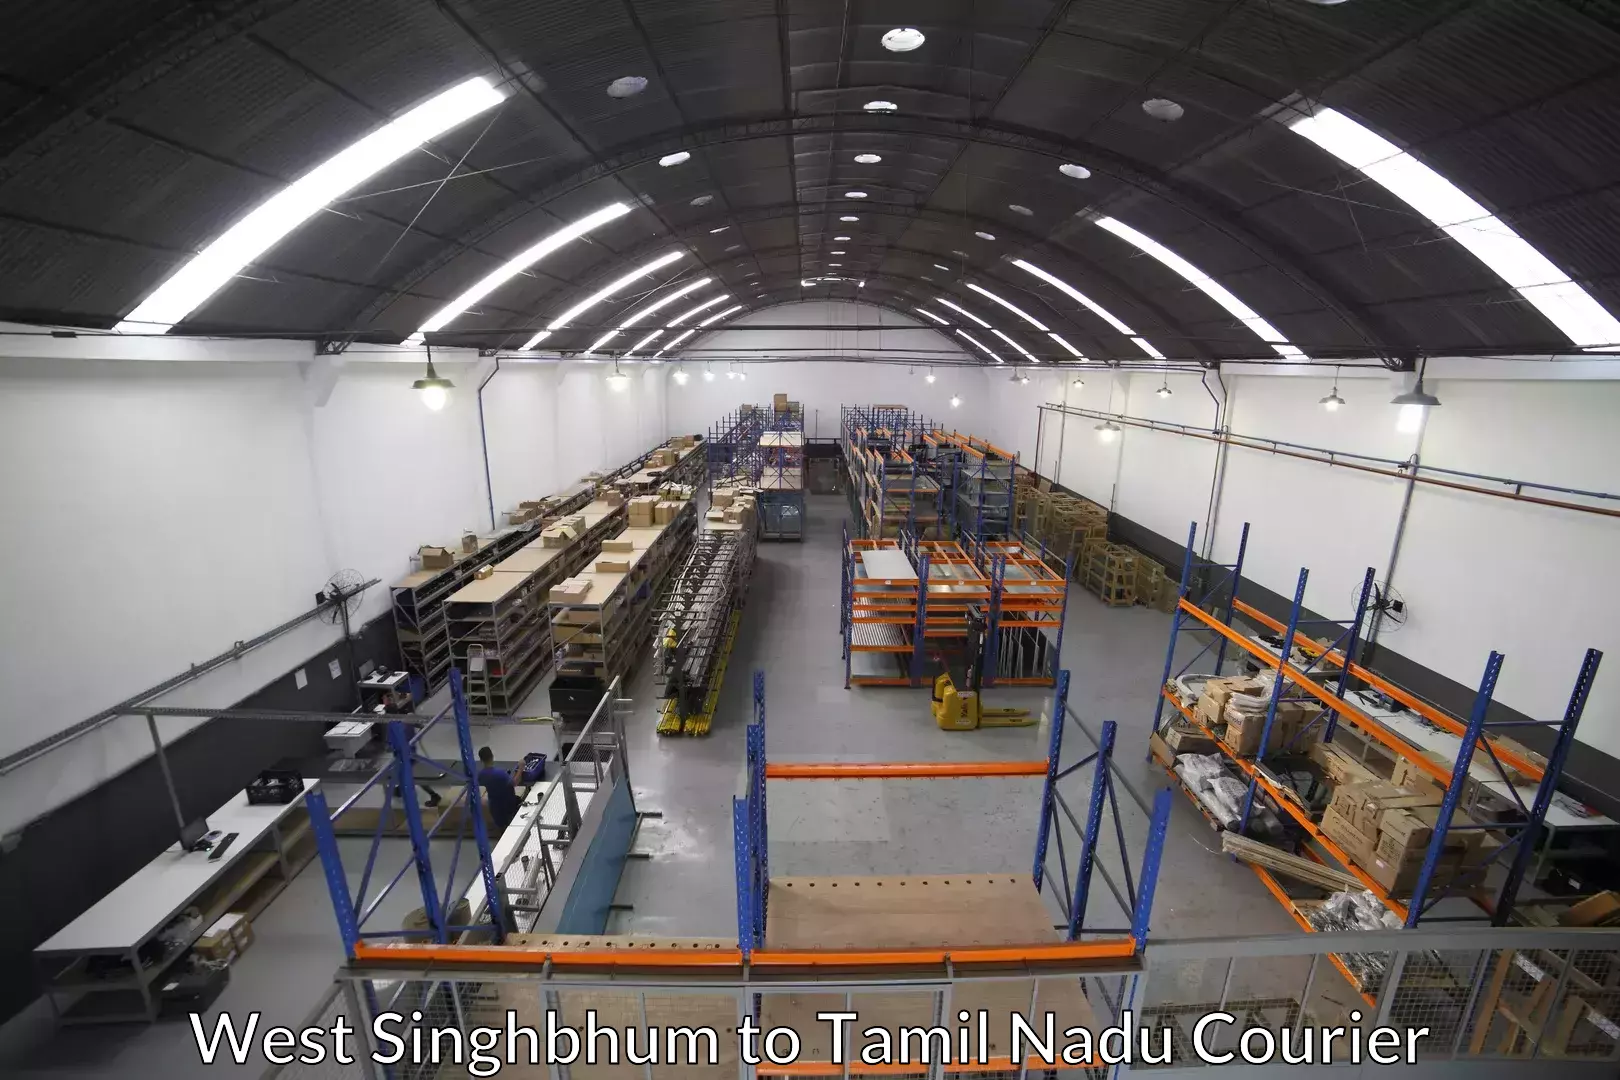 Furniture moving experts West Singhbhum to Vilathikulam